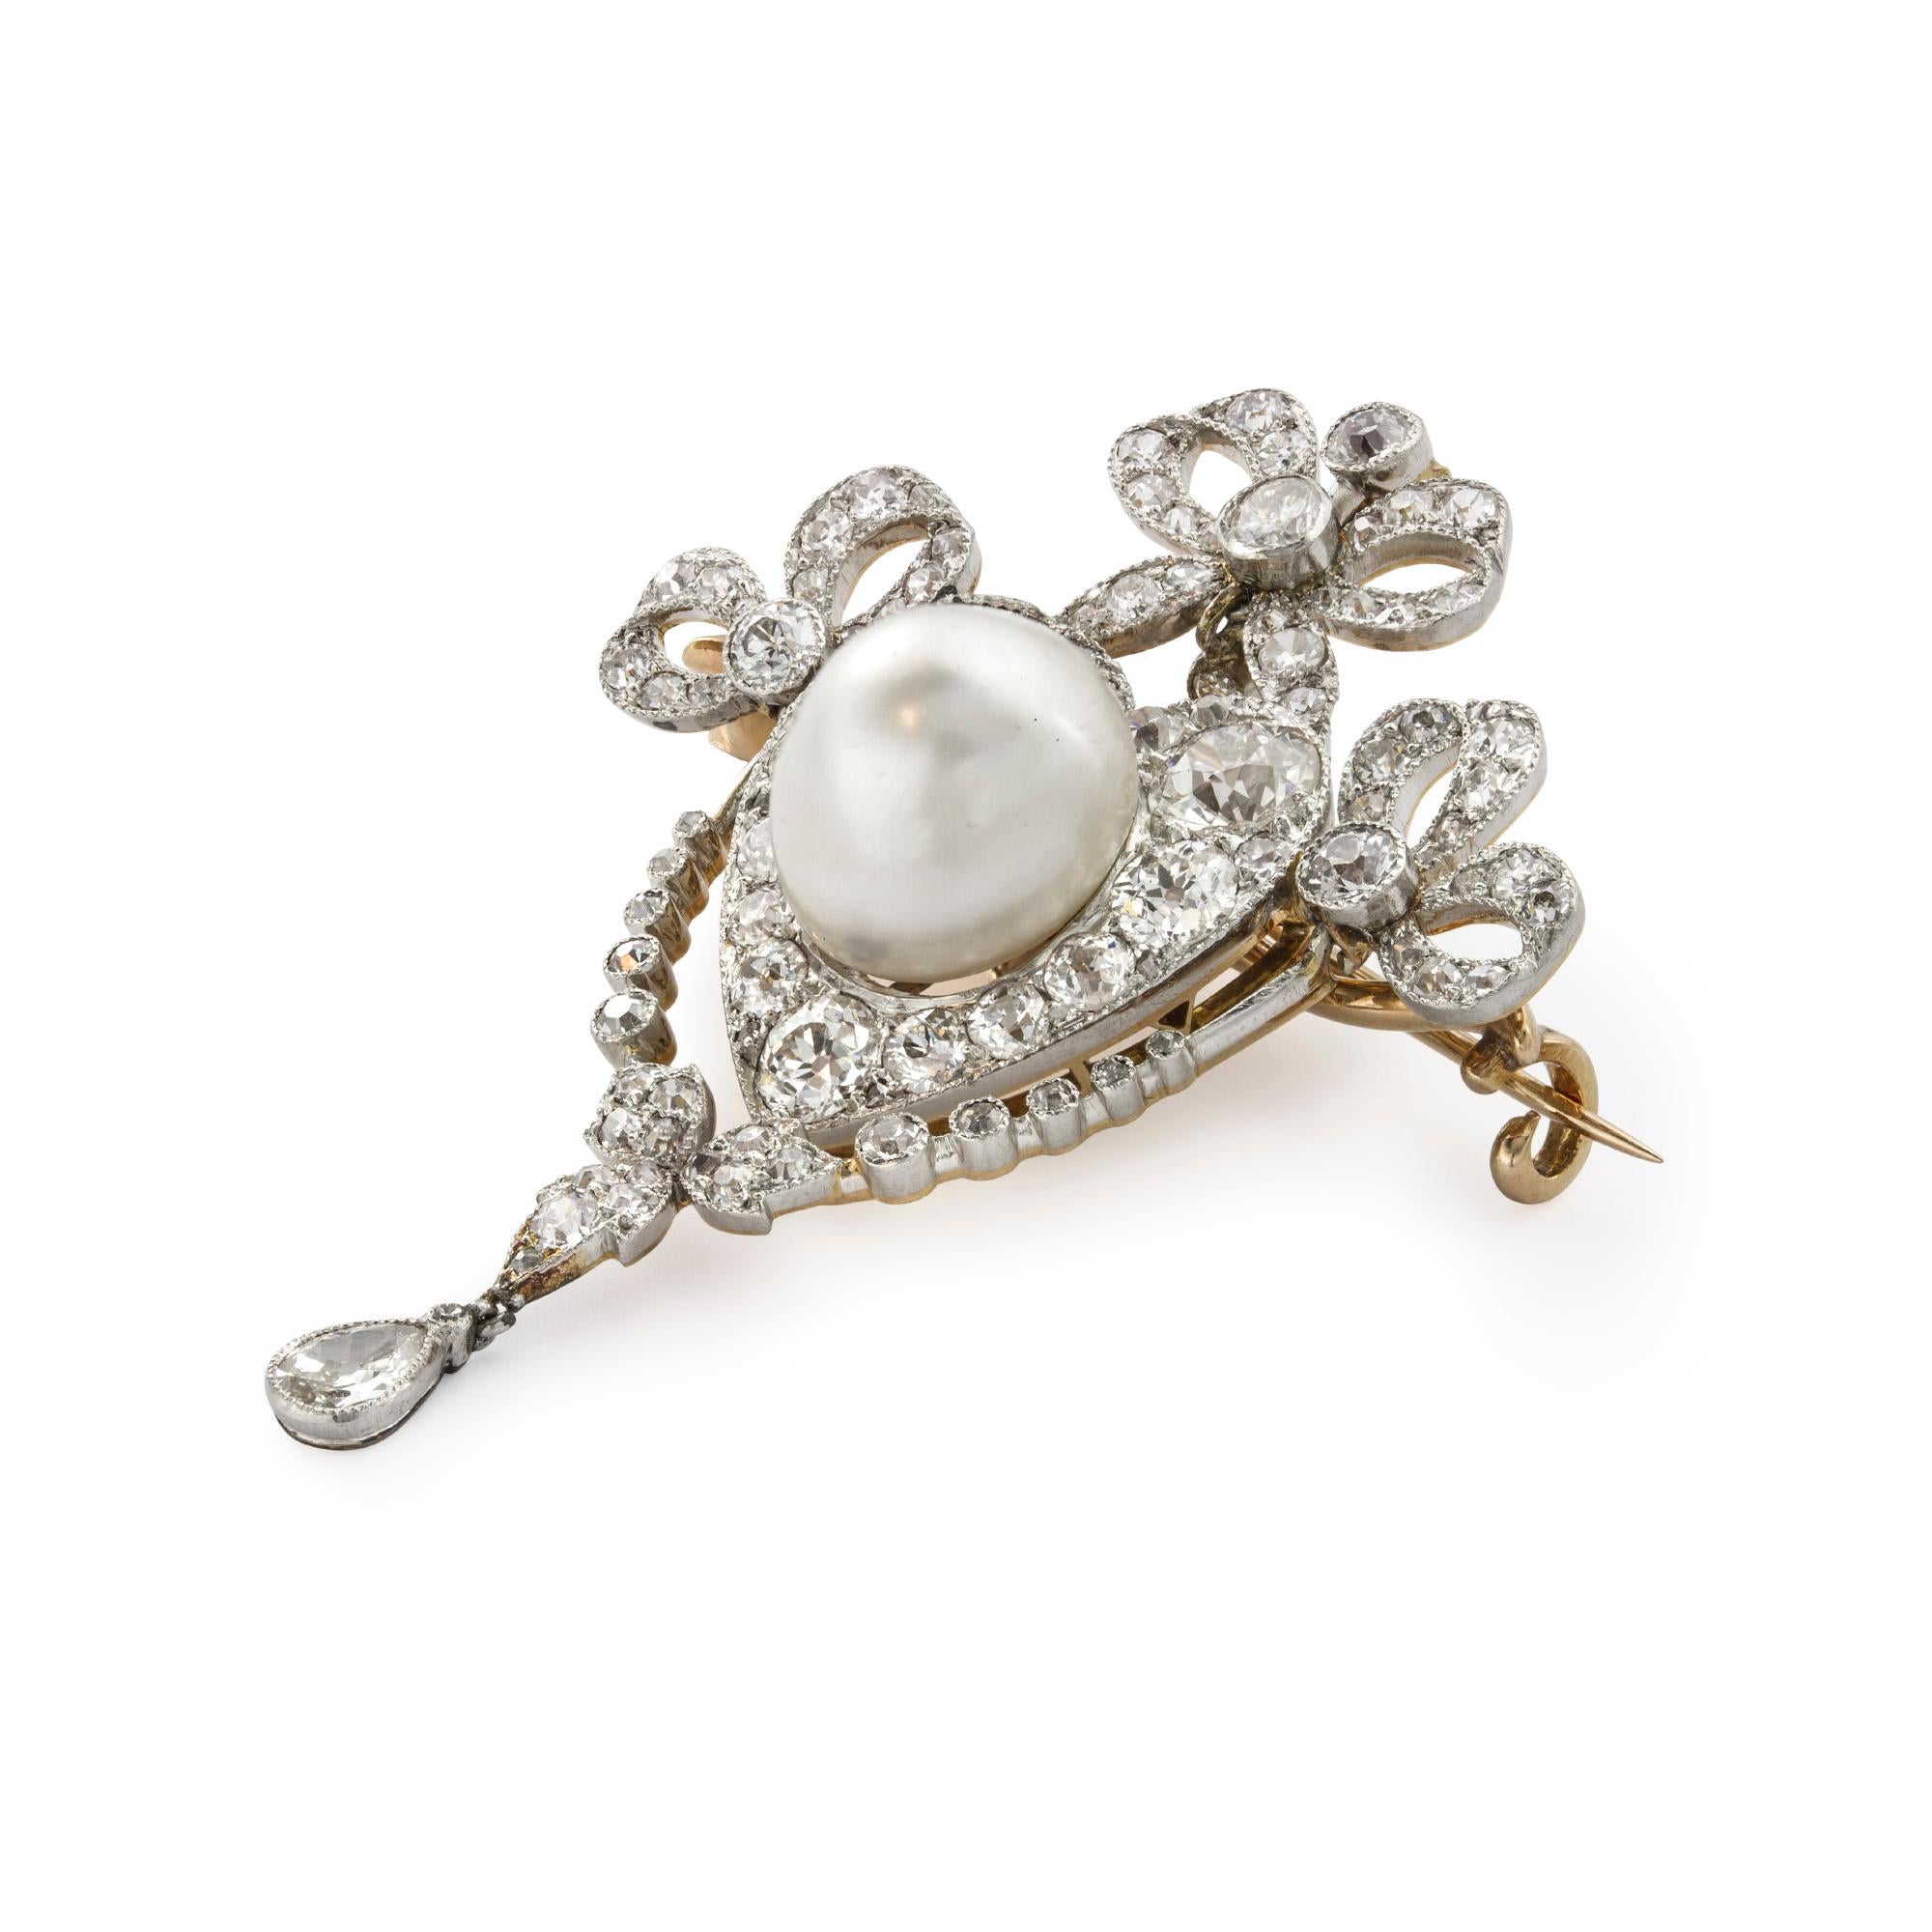 Broche édouardienne en perles et diamants, la broche avec une monture en ruban sertie de diamants, sertie au centre d'une perle à l'intérieur d'une grappe en forme de cœur sertie de diamants anciens, la perle naturelle mesurant environ 10,1 x 9.6mm